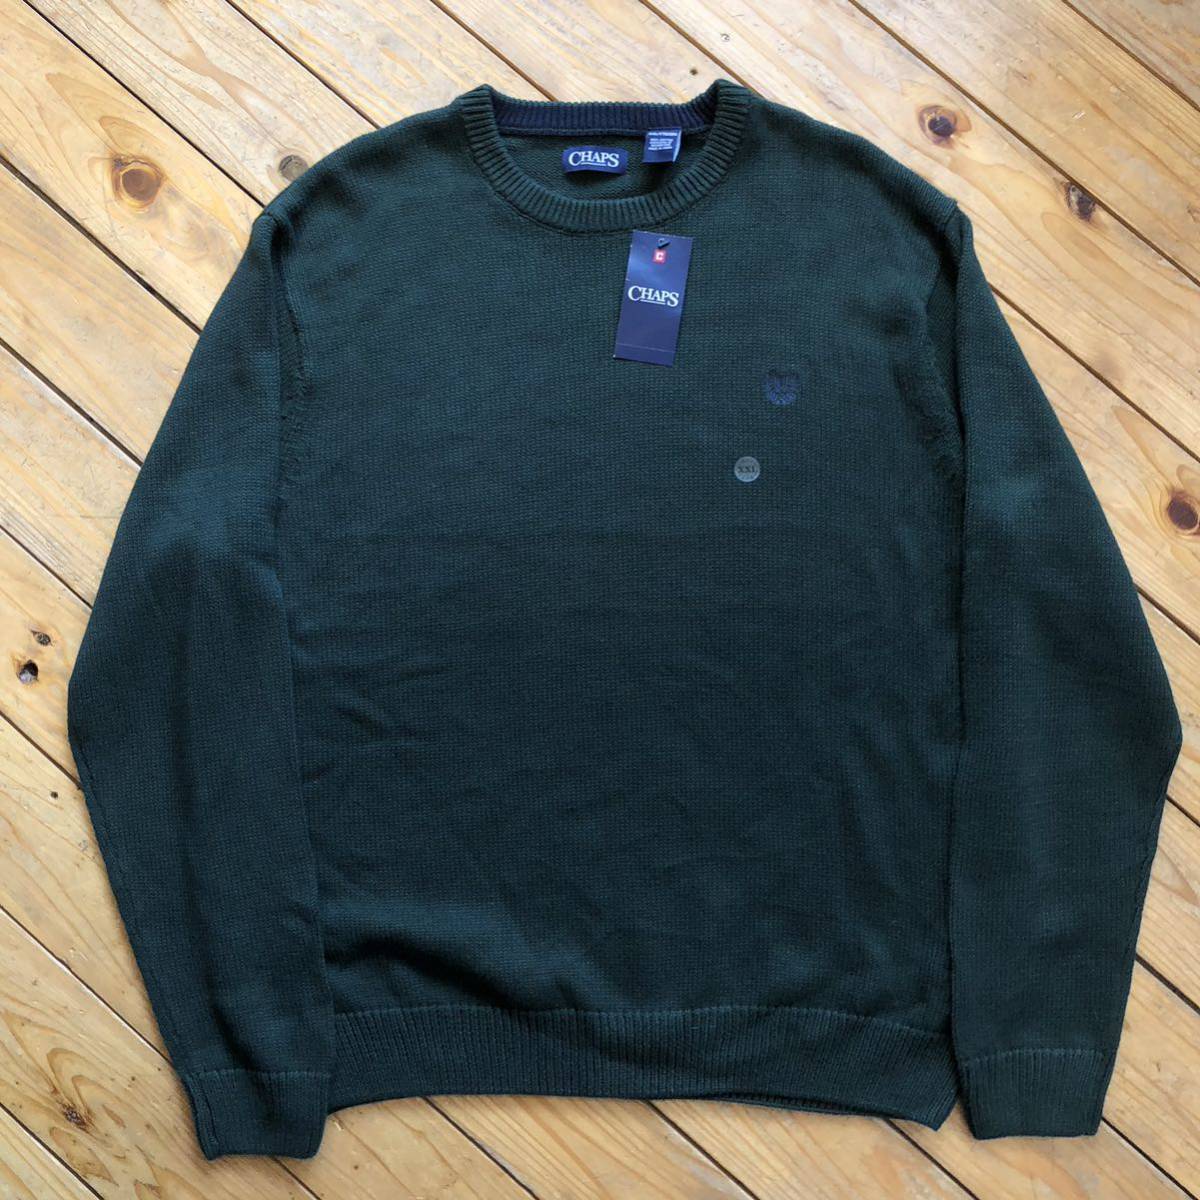  новый товар CHAPS chaps хлопок вязаный мужской размер XXL зеленый American Casual America скупка casual свитер с биркой не использовался товар S0743